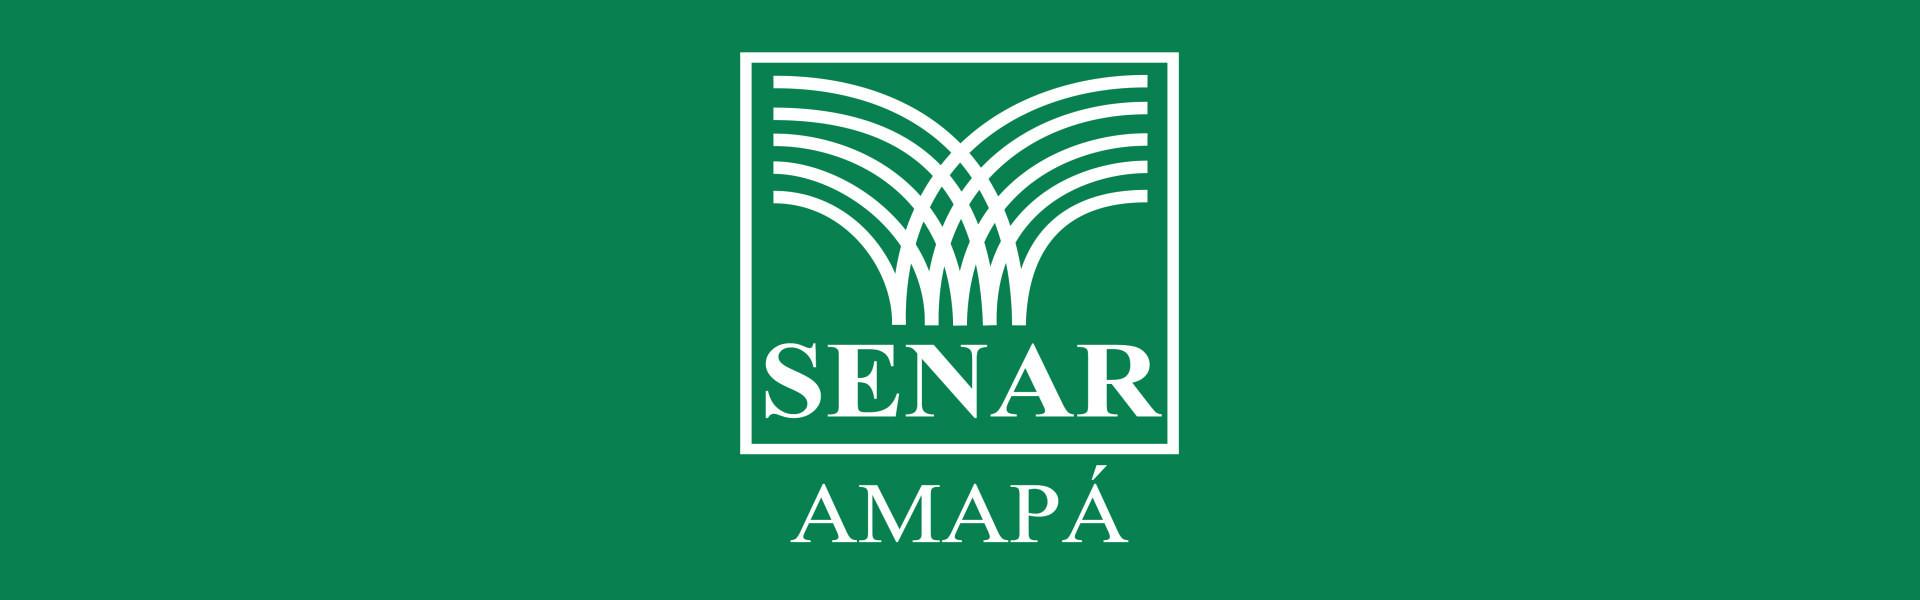 SENAR-AP convoca pedagogos aprovados no processo seletivo da instituição